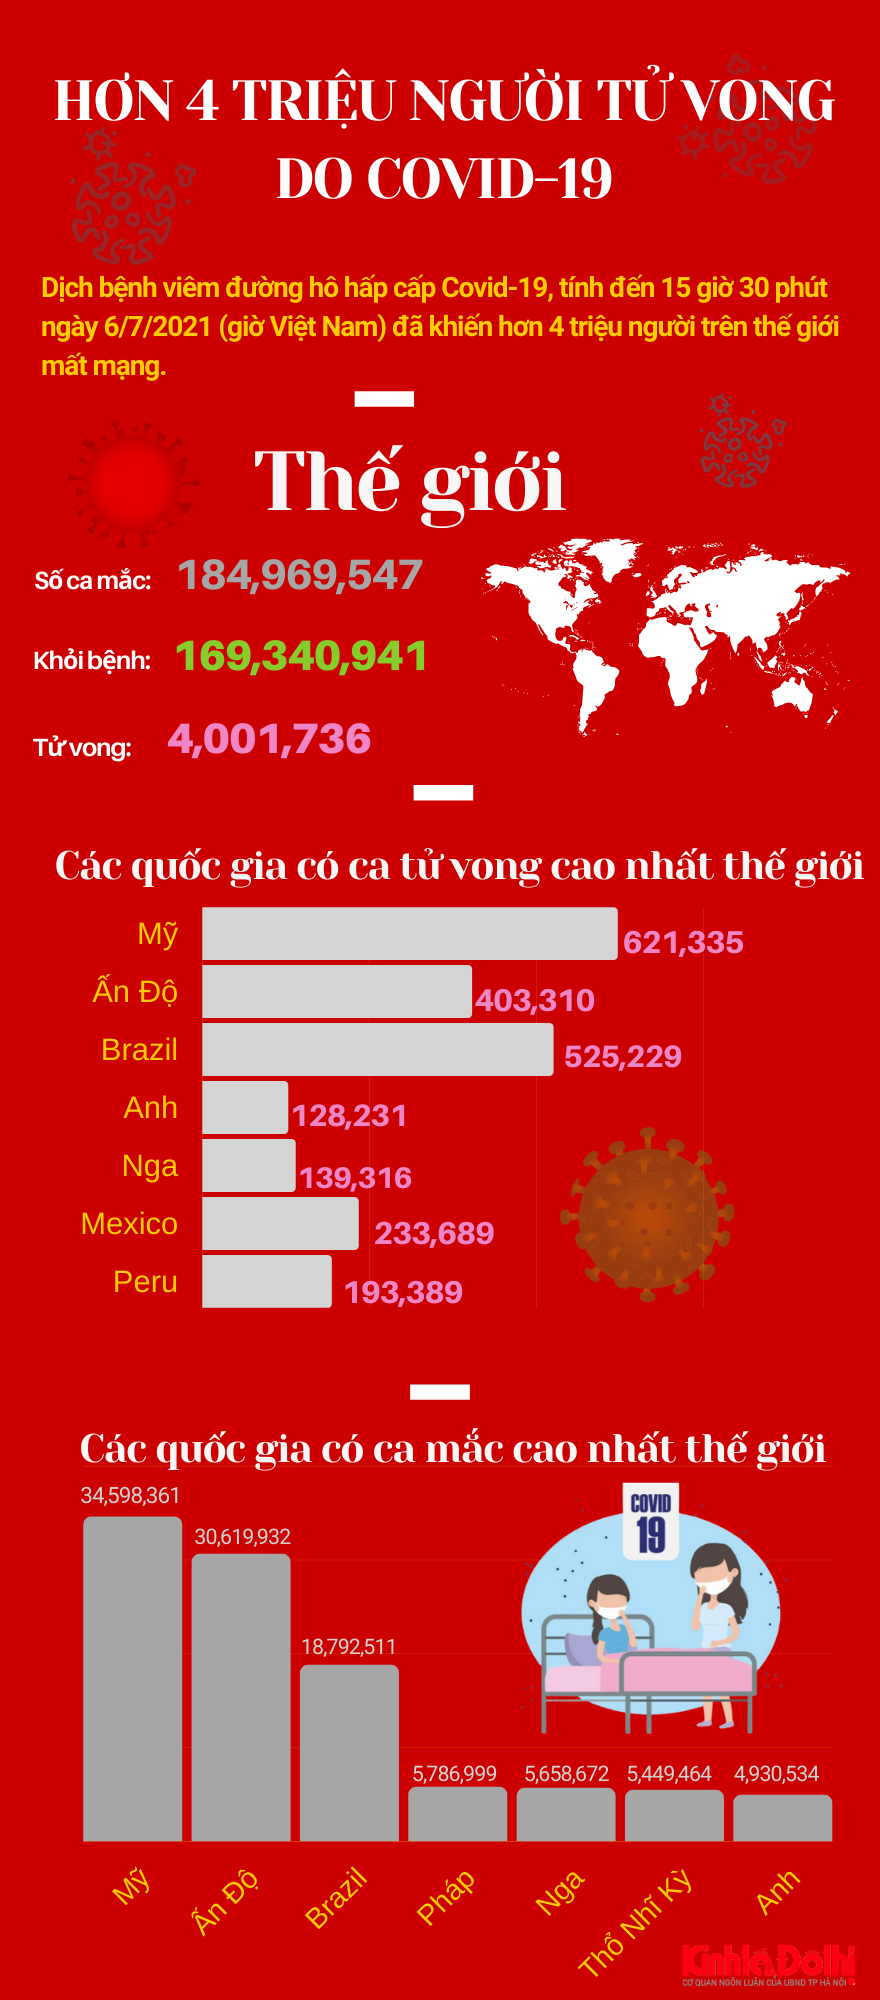 [Infographic] Hơn 4 triệu người trên thế giới tử vong vì dịch Covid-19 - Ảnh 1